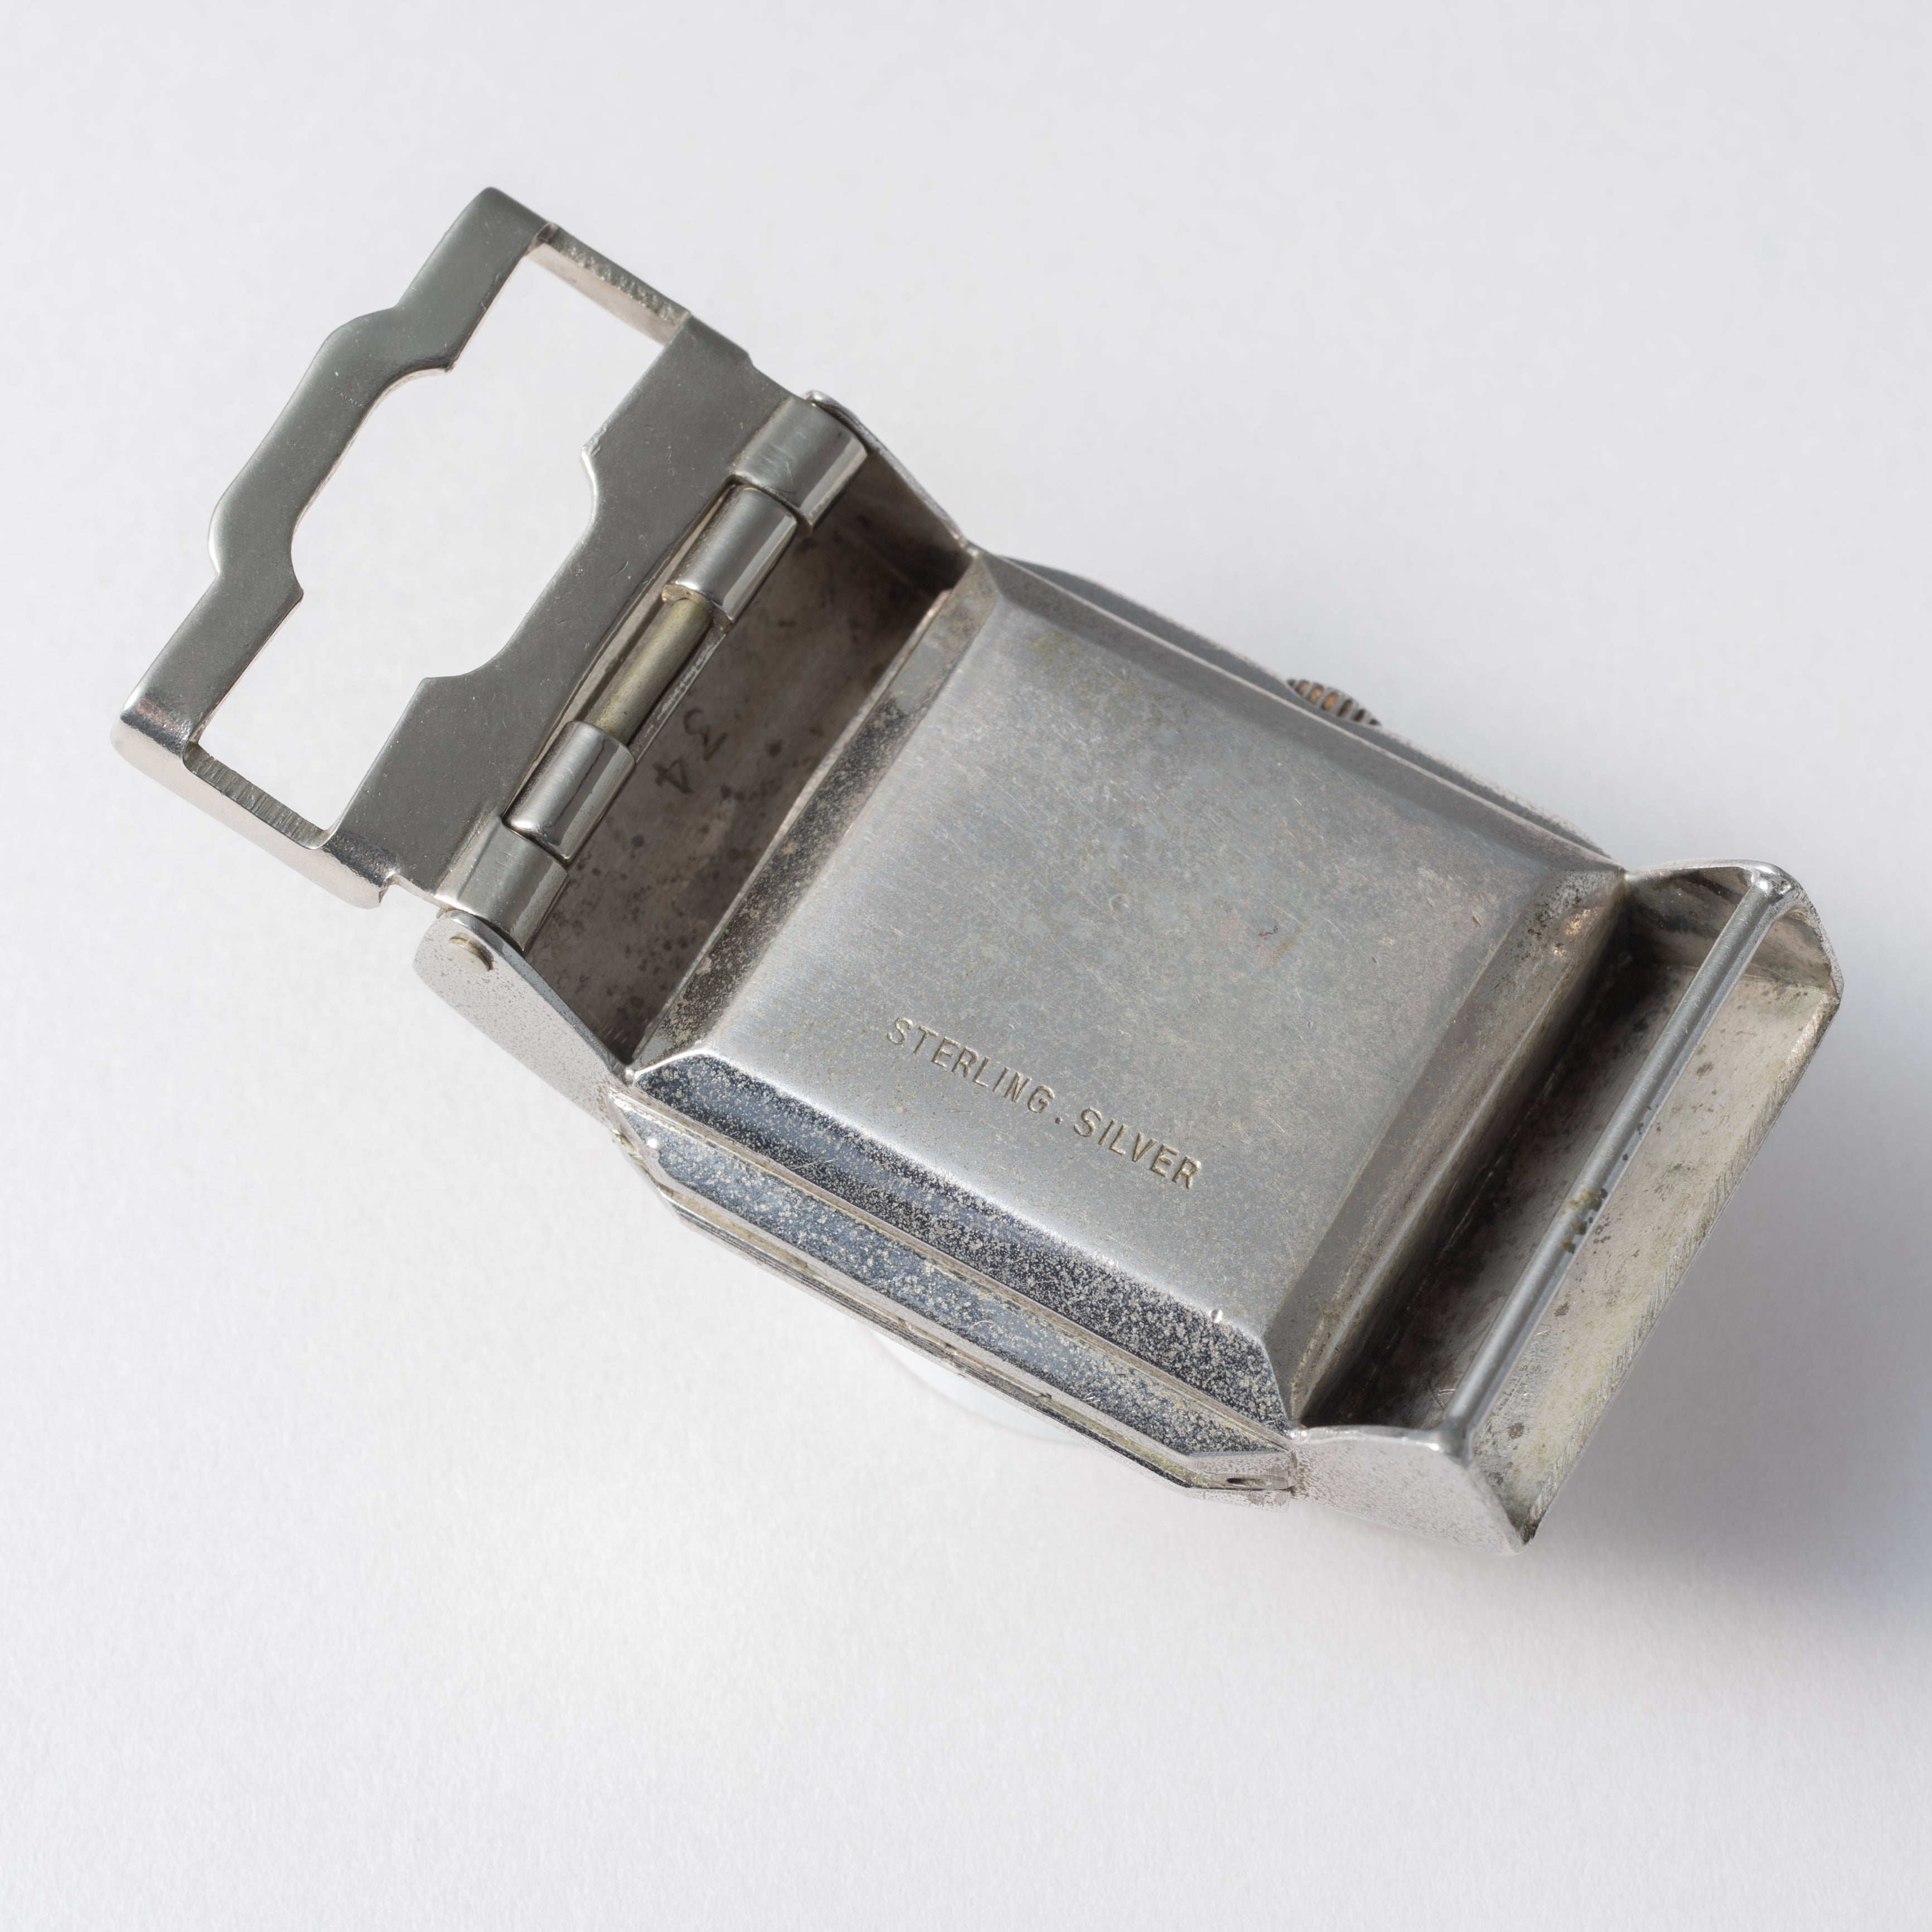 セイコー 銀無垢ケース ユニーク バックル時計 1950年製/昭和25年製 手 